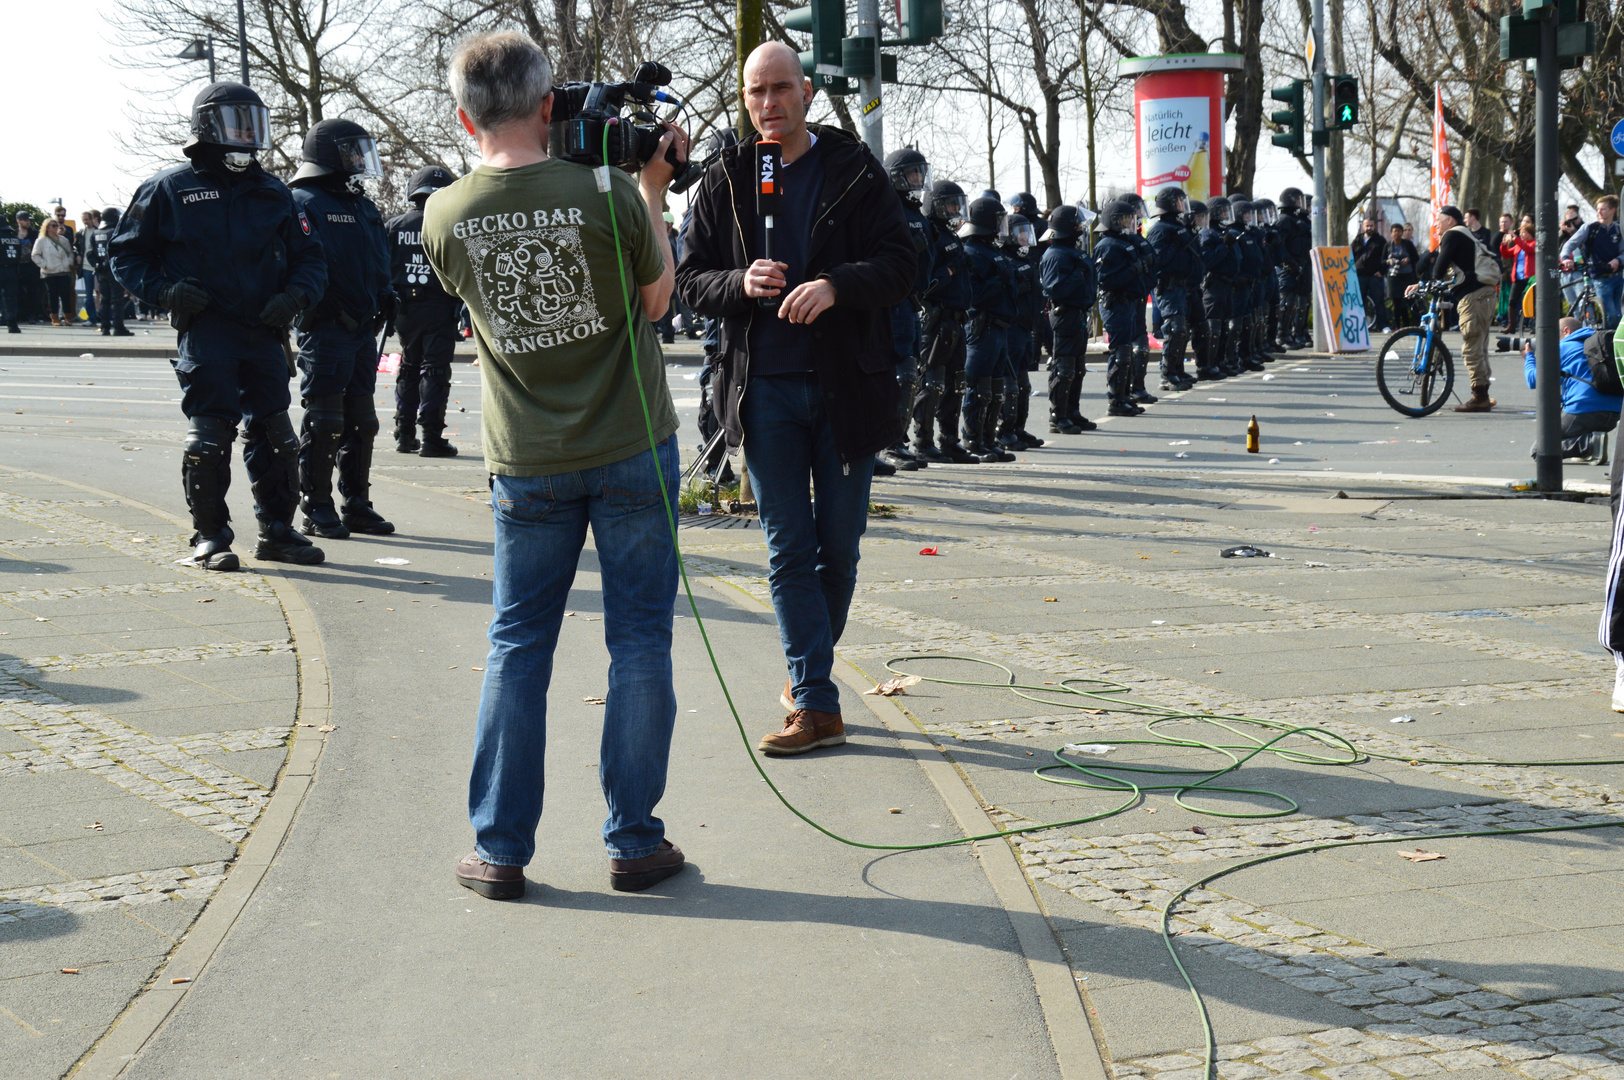 Blockupy in Frankfurt, 18.03.2015 (1)